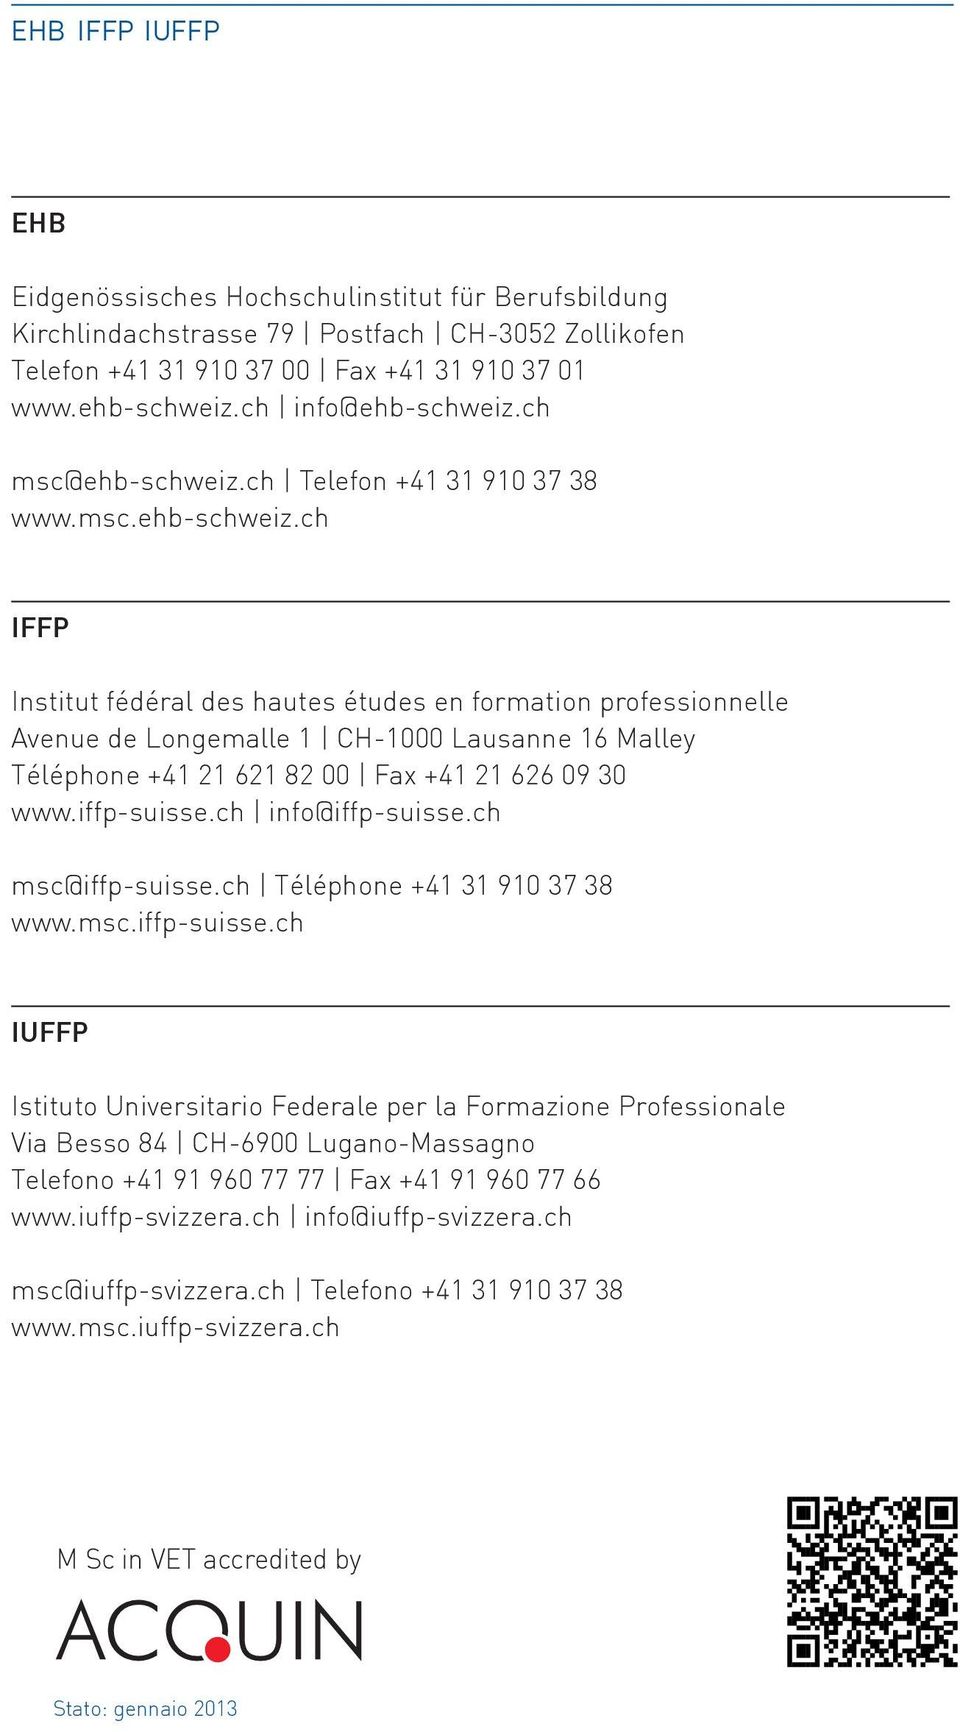 iffp-suisse.ch info@iffp-suisse.ch msc@iffp-suisse.ch Téléphone +41 31 910 37 38 www.msc.iffp-suisse.ch IUFFP Istituto Universitario Federale per la Formazione Professionale Via Besso 84 CH-6900 Lugano-Massagno Telefono +41 91 960 77 77 Fax +41 91 960 77 66 www.